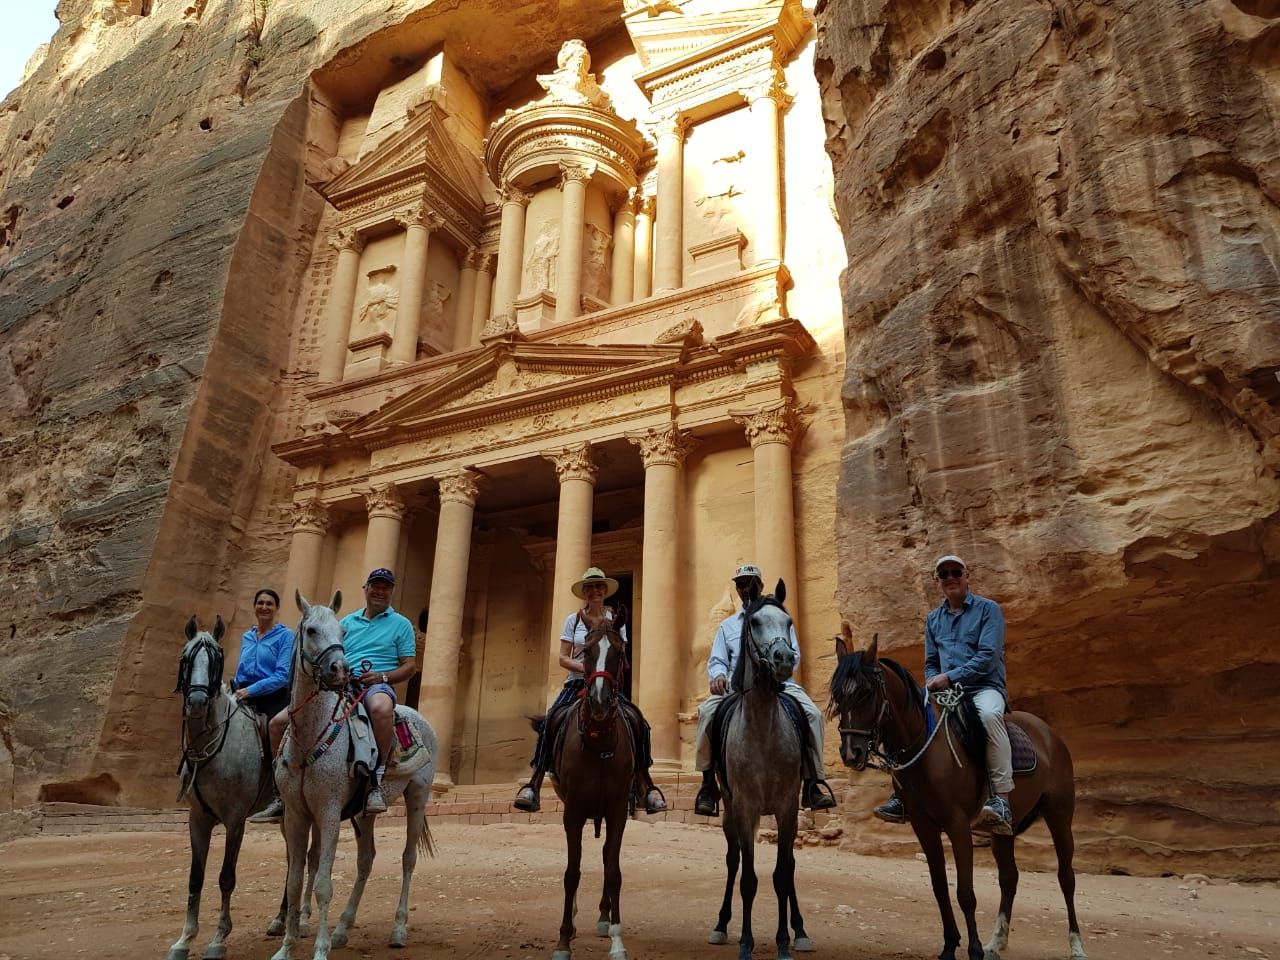 Petra – the treasury